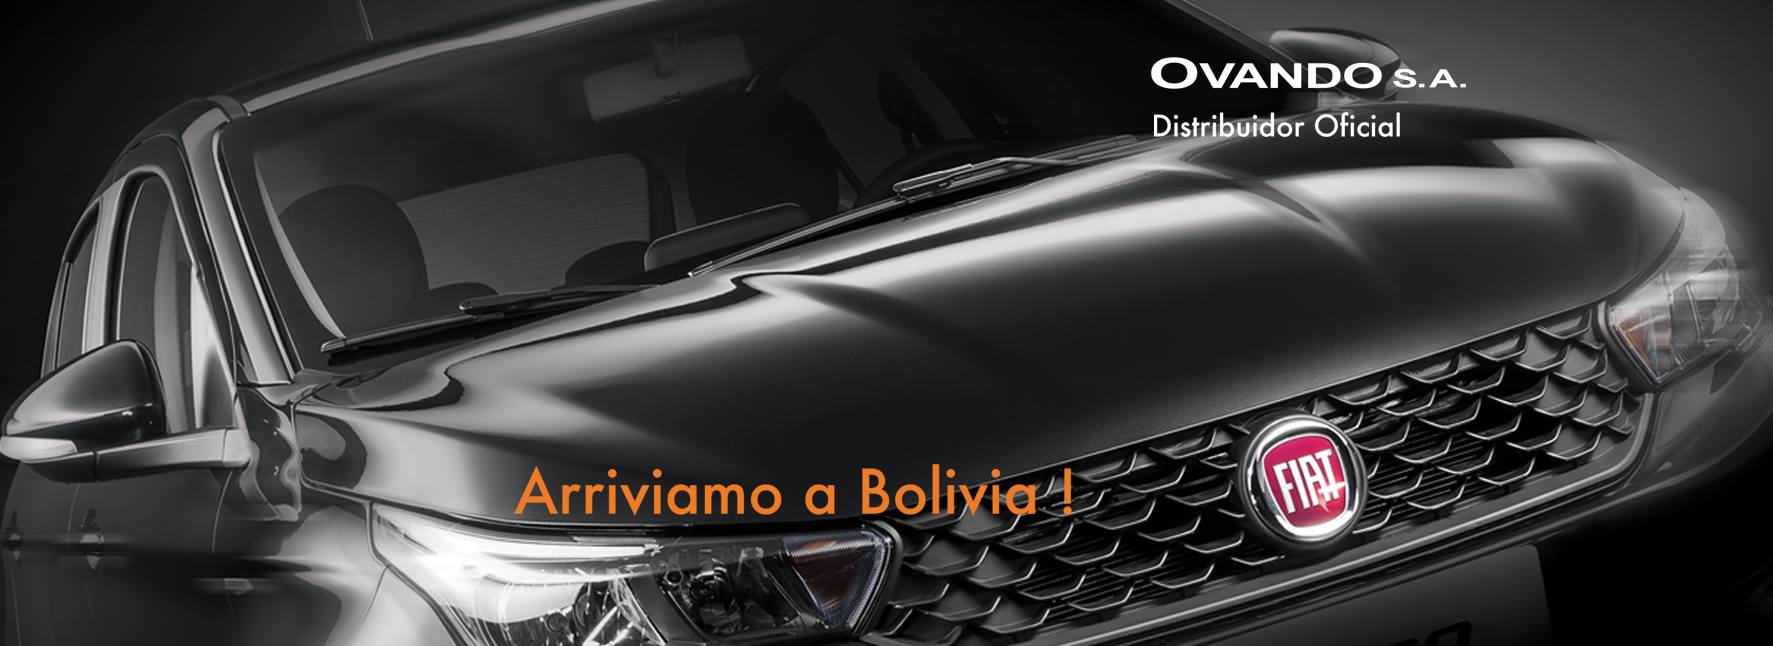 Ovando S.A. es Distribuidor Oficial  para Bolivia del gigante italiano Fiat